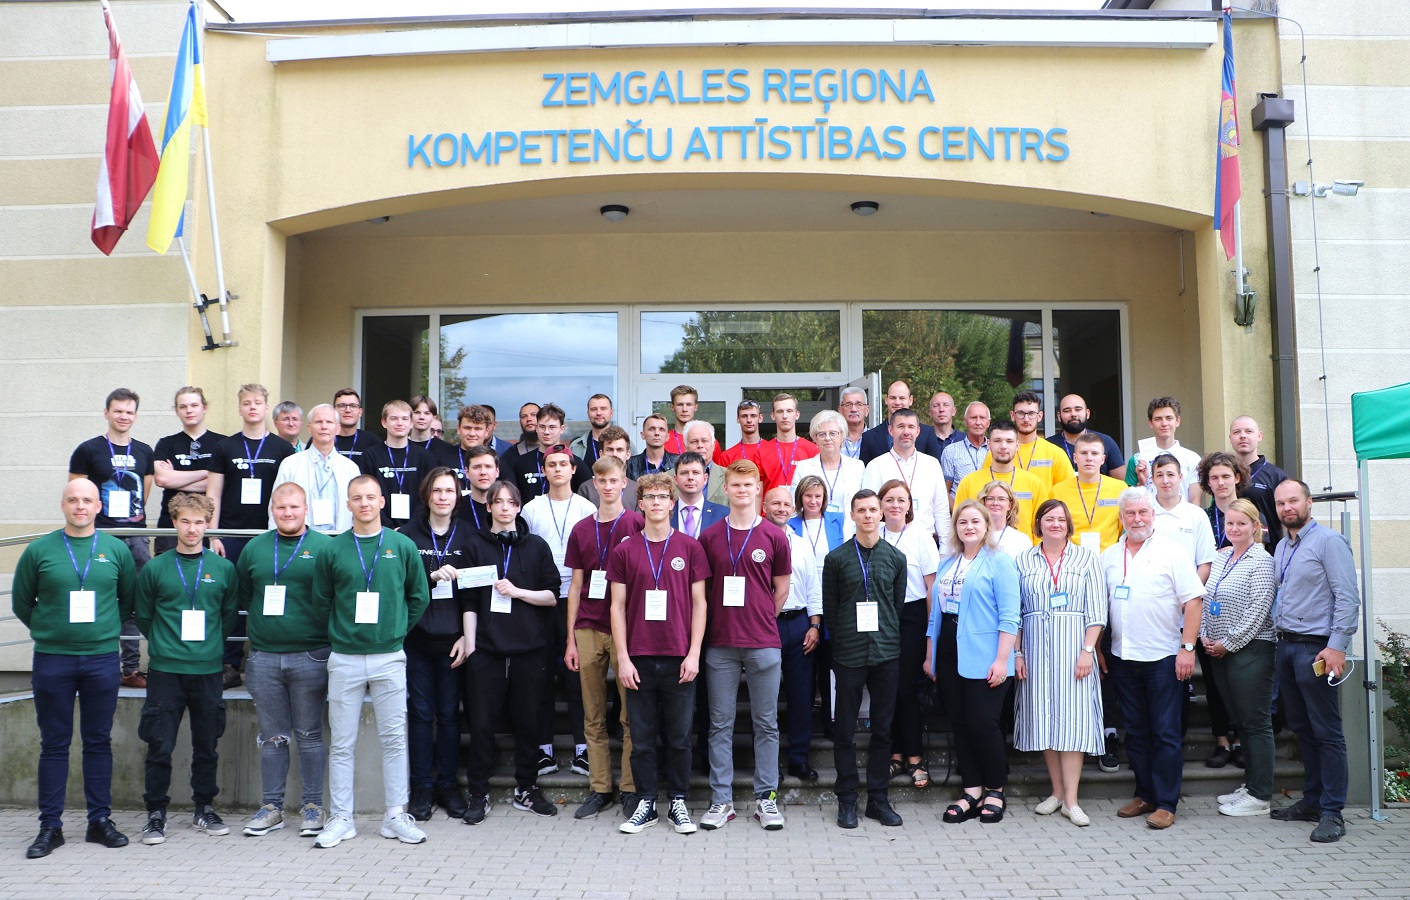 8 septembrī Jelgavā notika Baltijas profesionālās izglītības audzēkņu konkursa fināls metālapstrādes un mašīnbūves nozarē